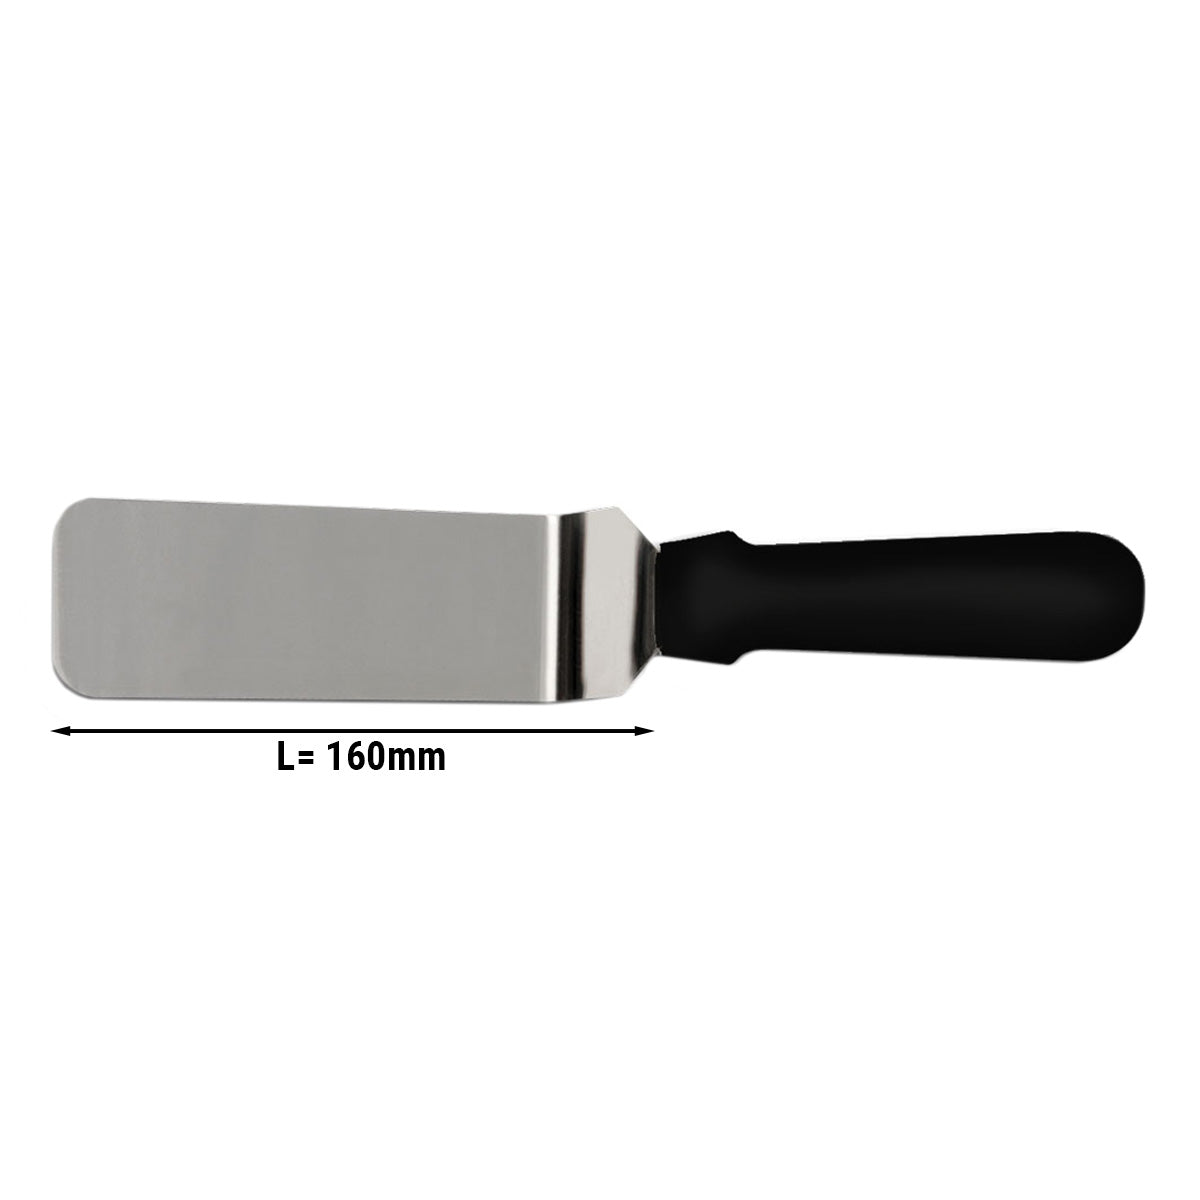 Vinklet palettkniv - 16 cm